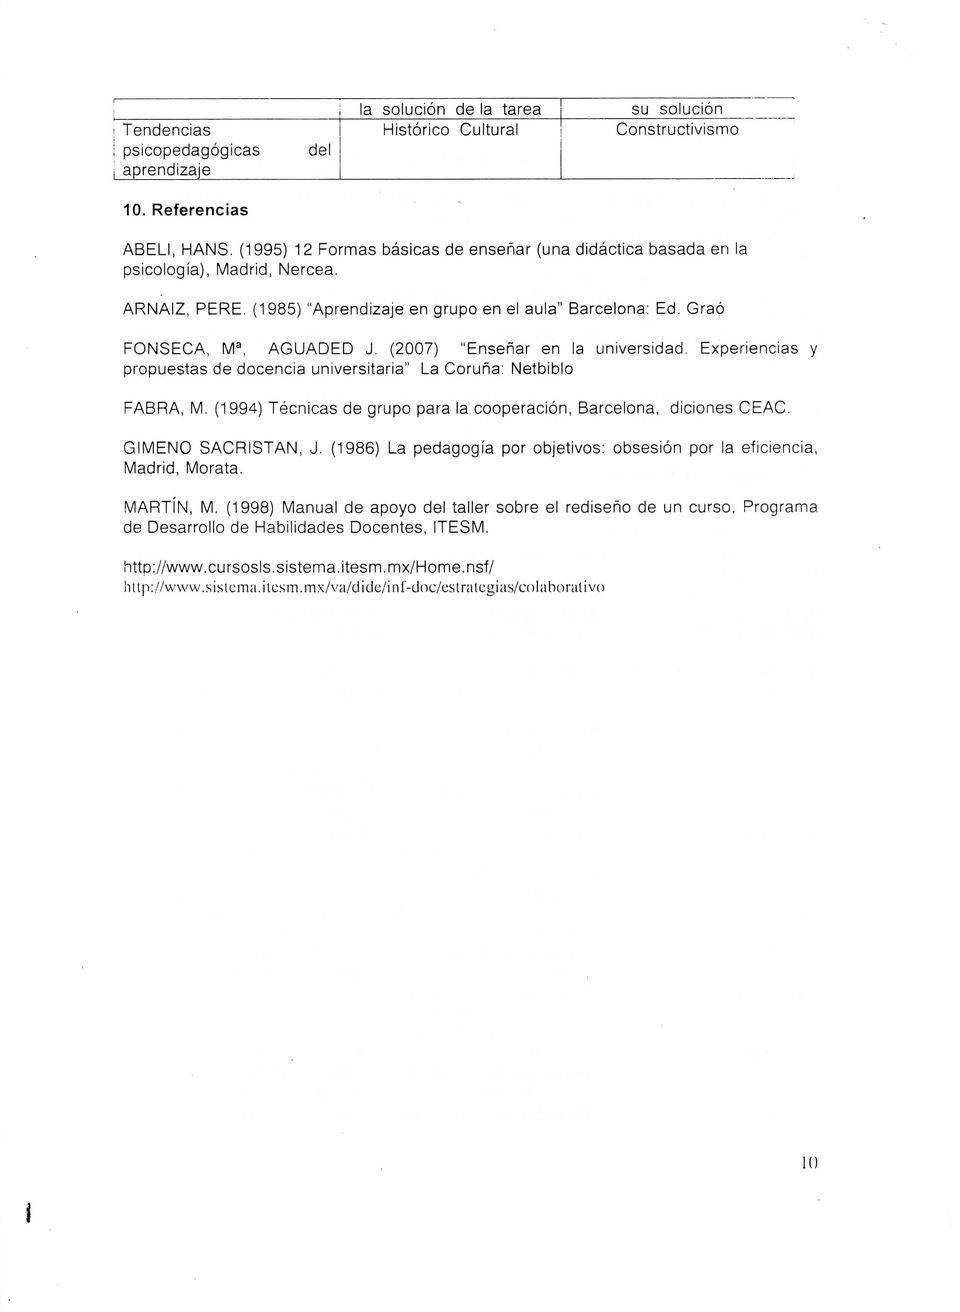 (2007) "Enseñar en la universidad. Experiencias y propuestas de docencia universitaria" La Coruña: Netbiblo FABRA, M. (1994) Técnicas de grupo para la cooperación, Barcelona, diciones CEAC.